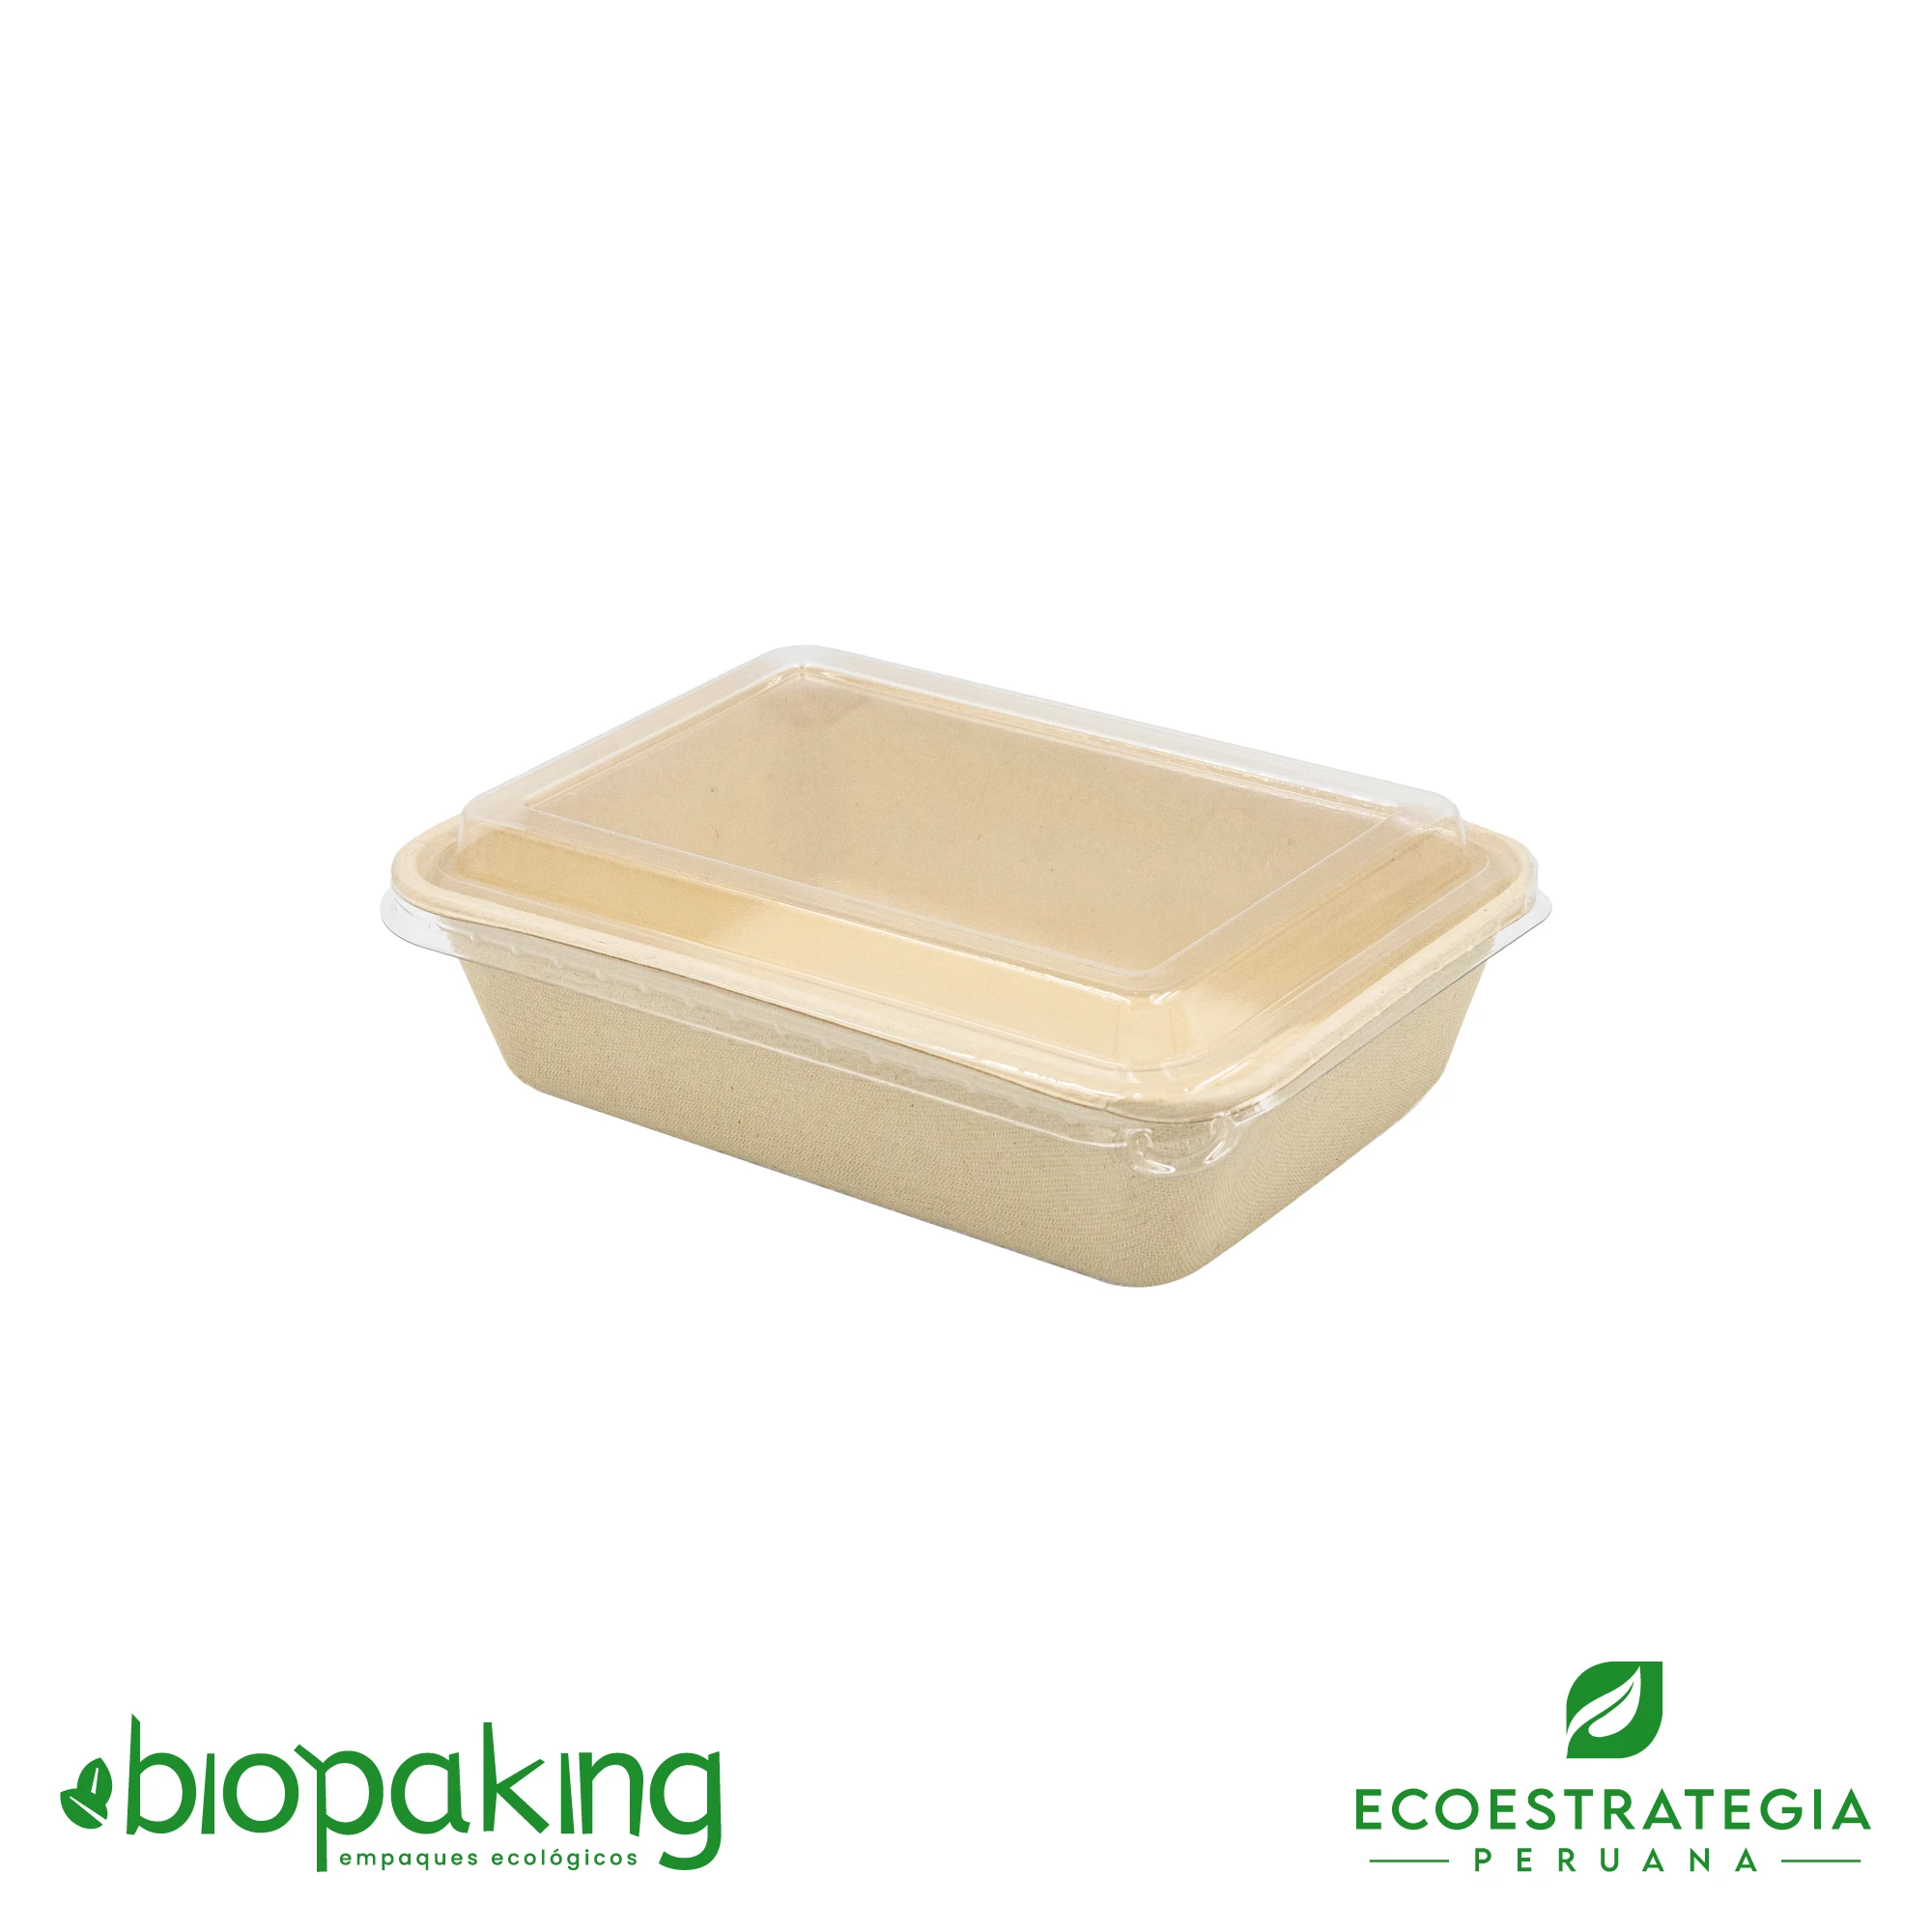 Esta bandeja biodegradable de 800ml es a base de fibra de trigo. Envases descartables con gramaje ideal, cotiza tus empaques, platos, tapers ecológicos y más